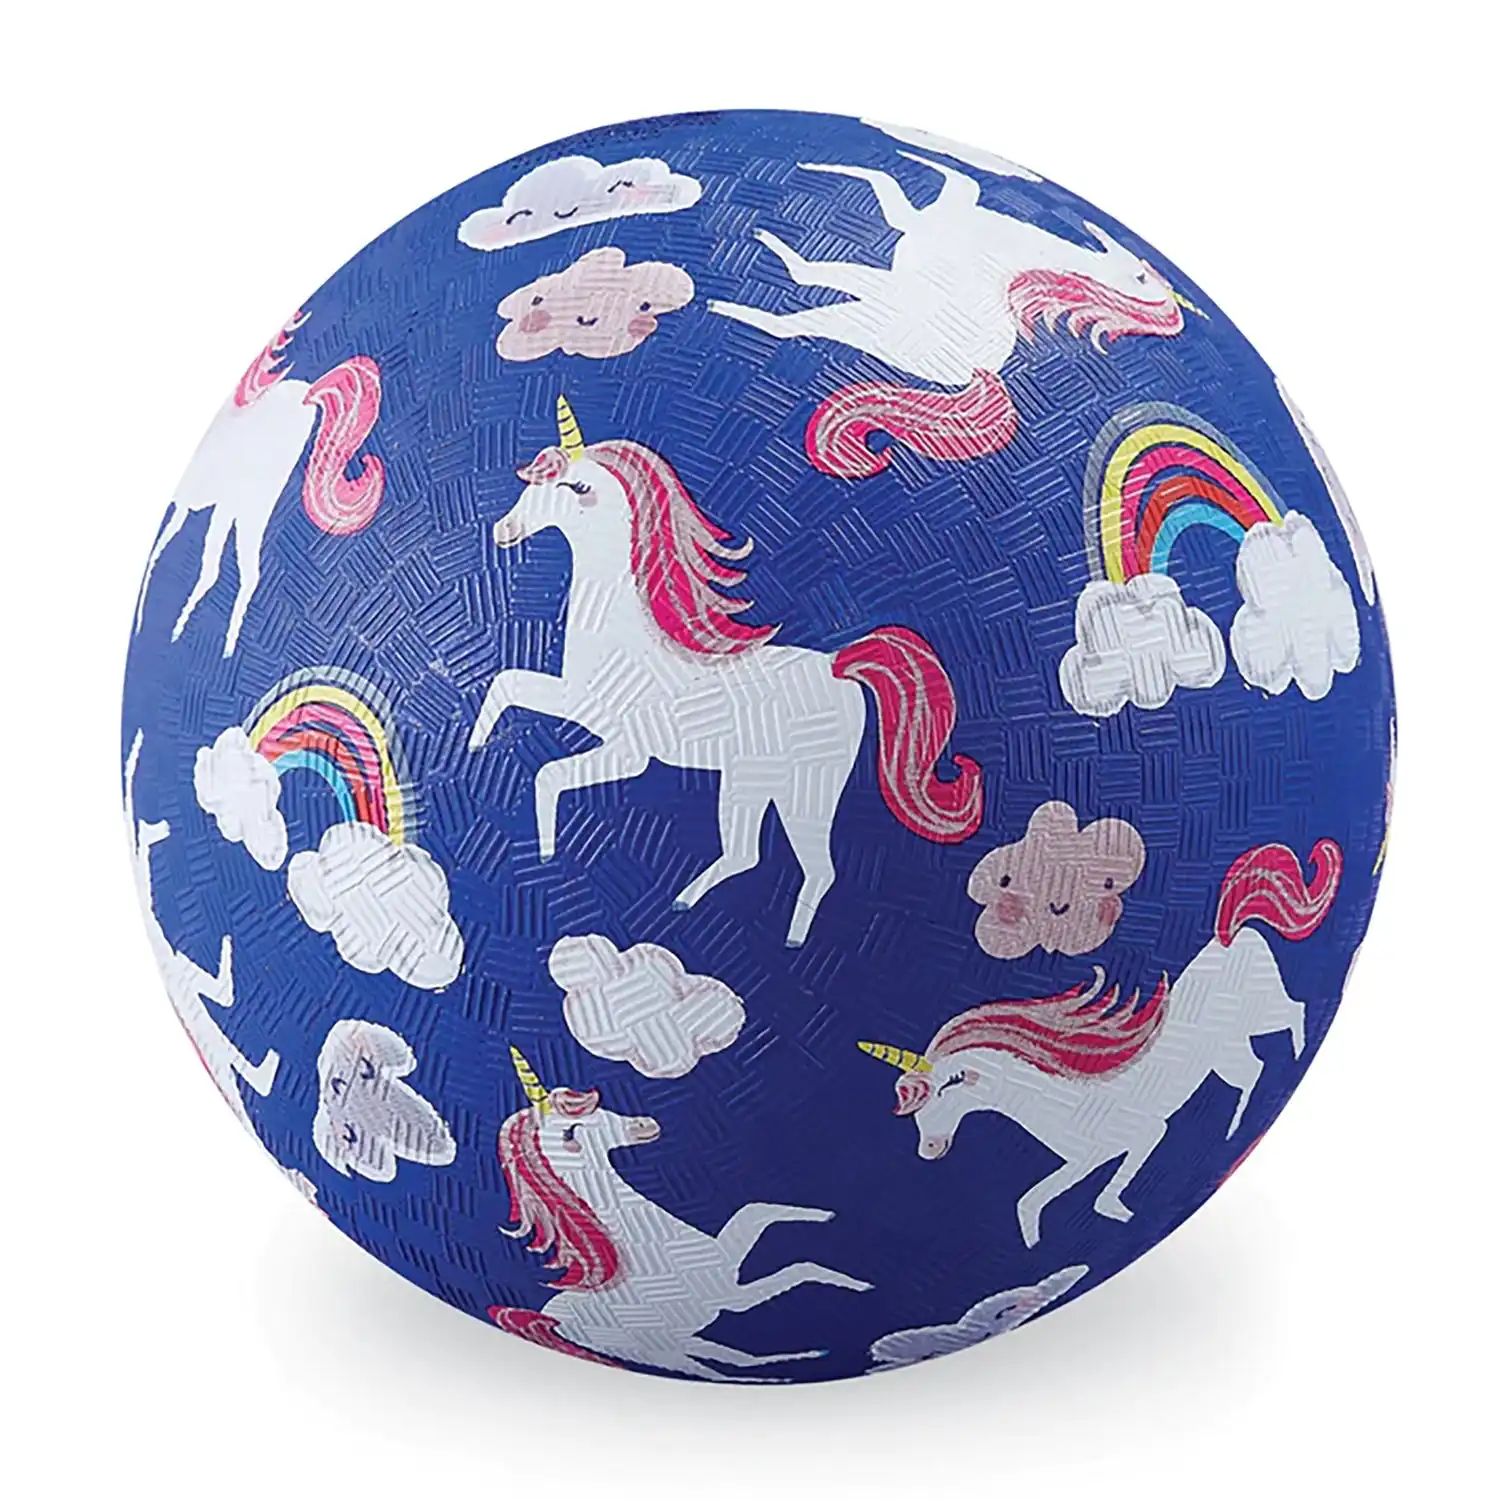 7 inch Playground Ball - Unicorn